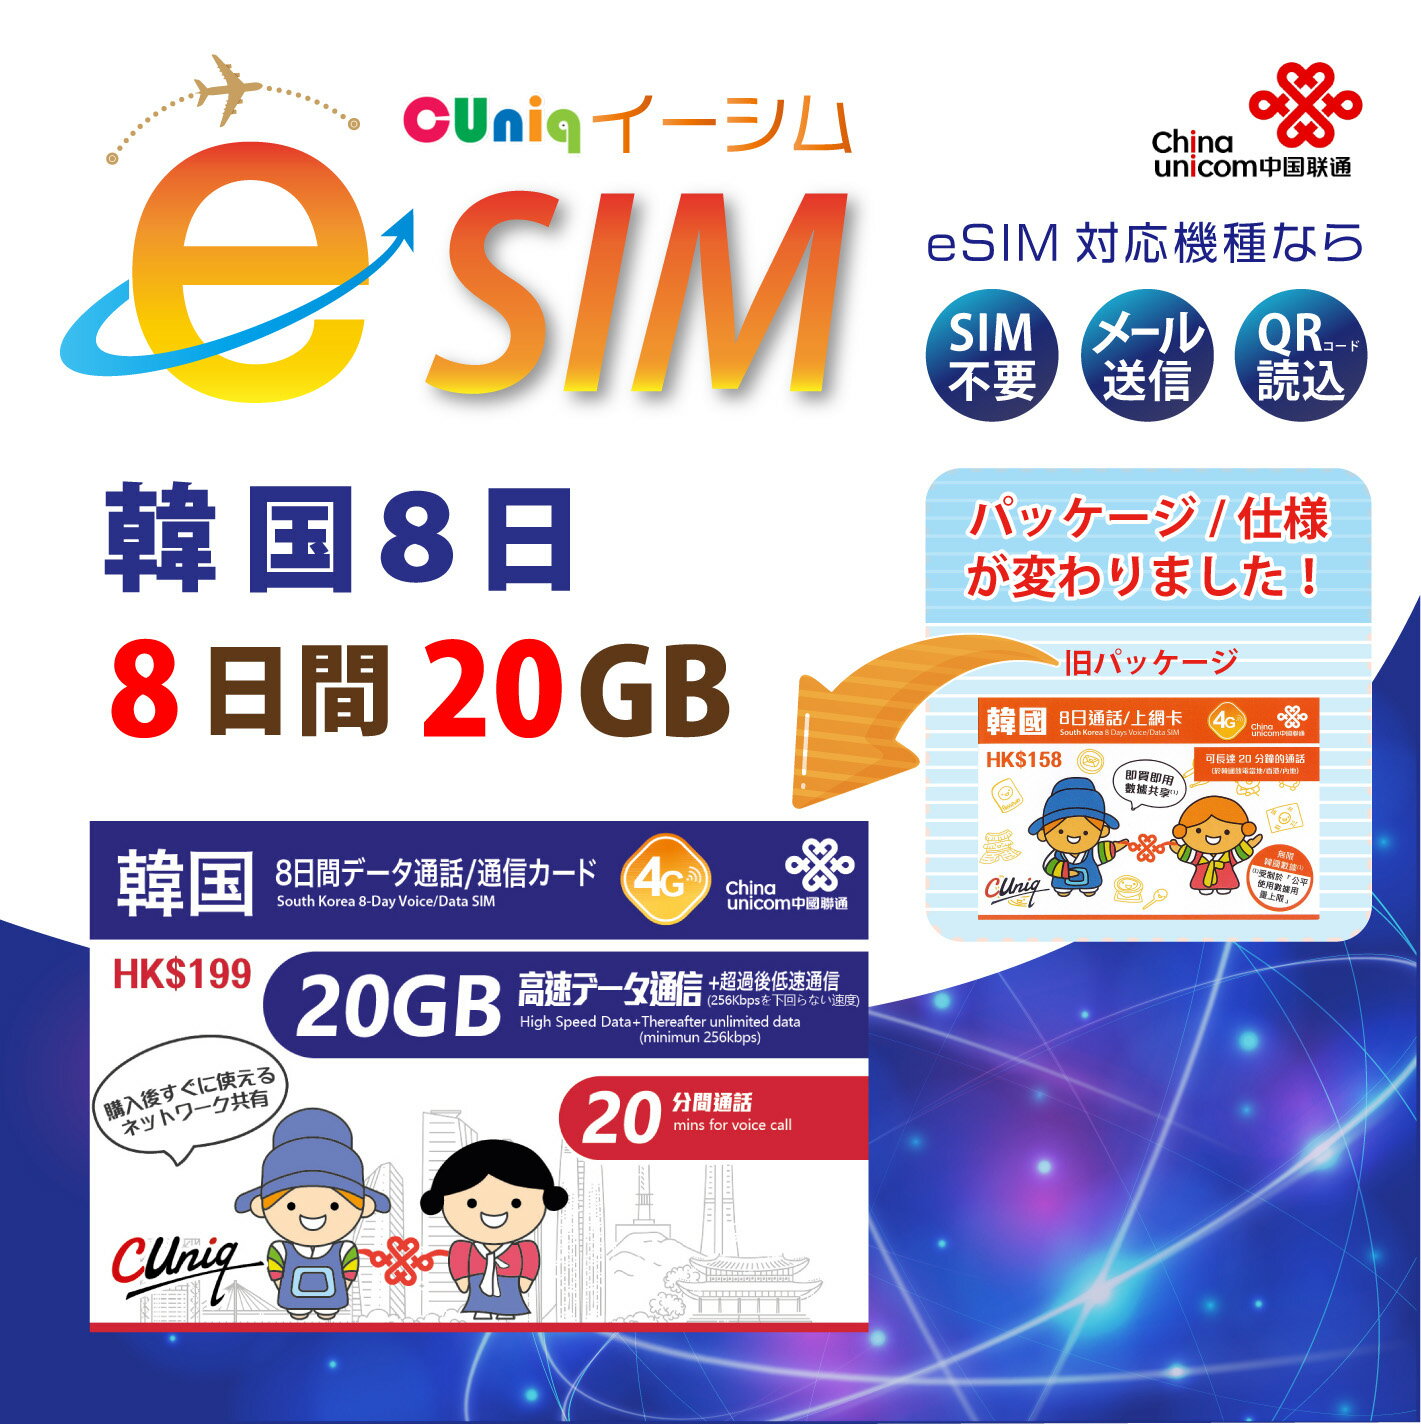 【eSIM版！荷物のお届けなし！メールにて送信】<strong>韓国</strong> 専用 eSIM 20GB/8日 プリペイド e-SIM データ通信+音声通話SIMカード <strong>韓国</strong>esim 中国聯通 ChinaUnicom 【eSIM対応機種専用】